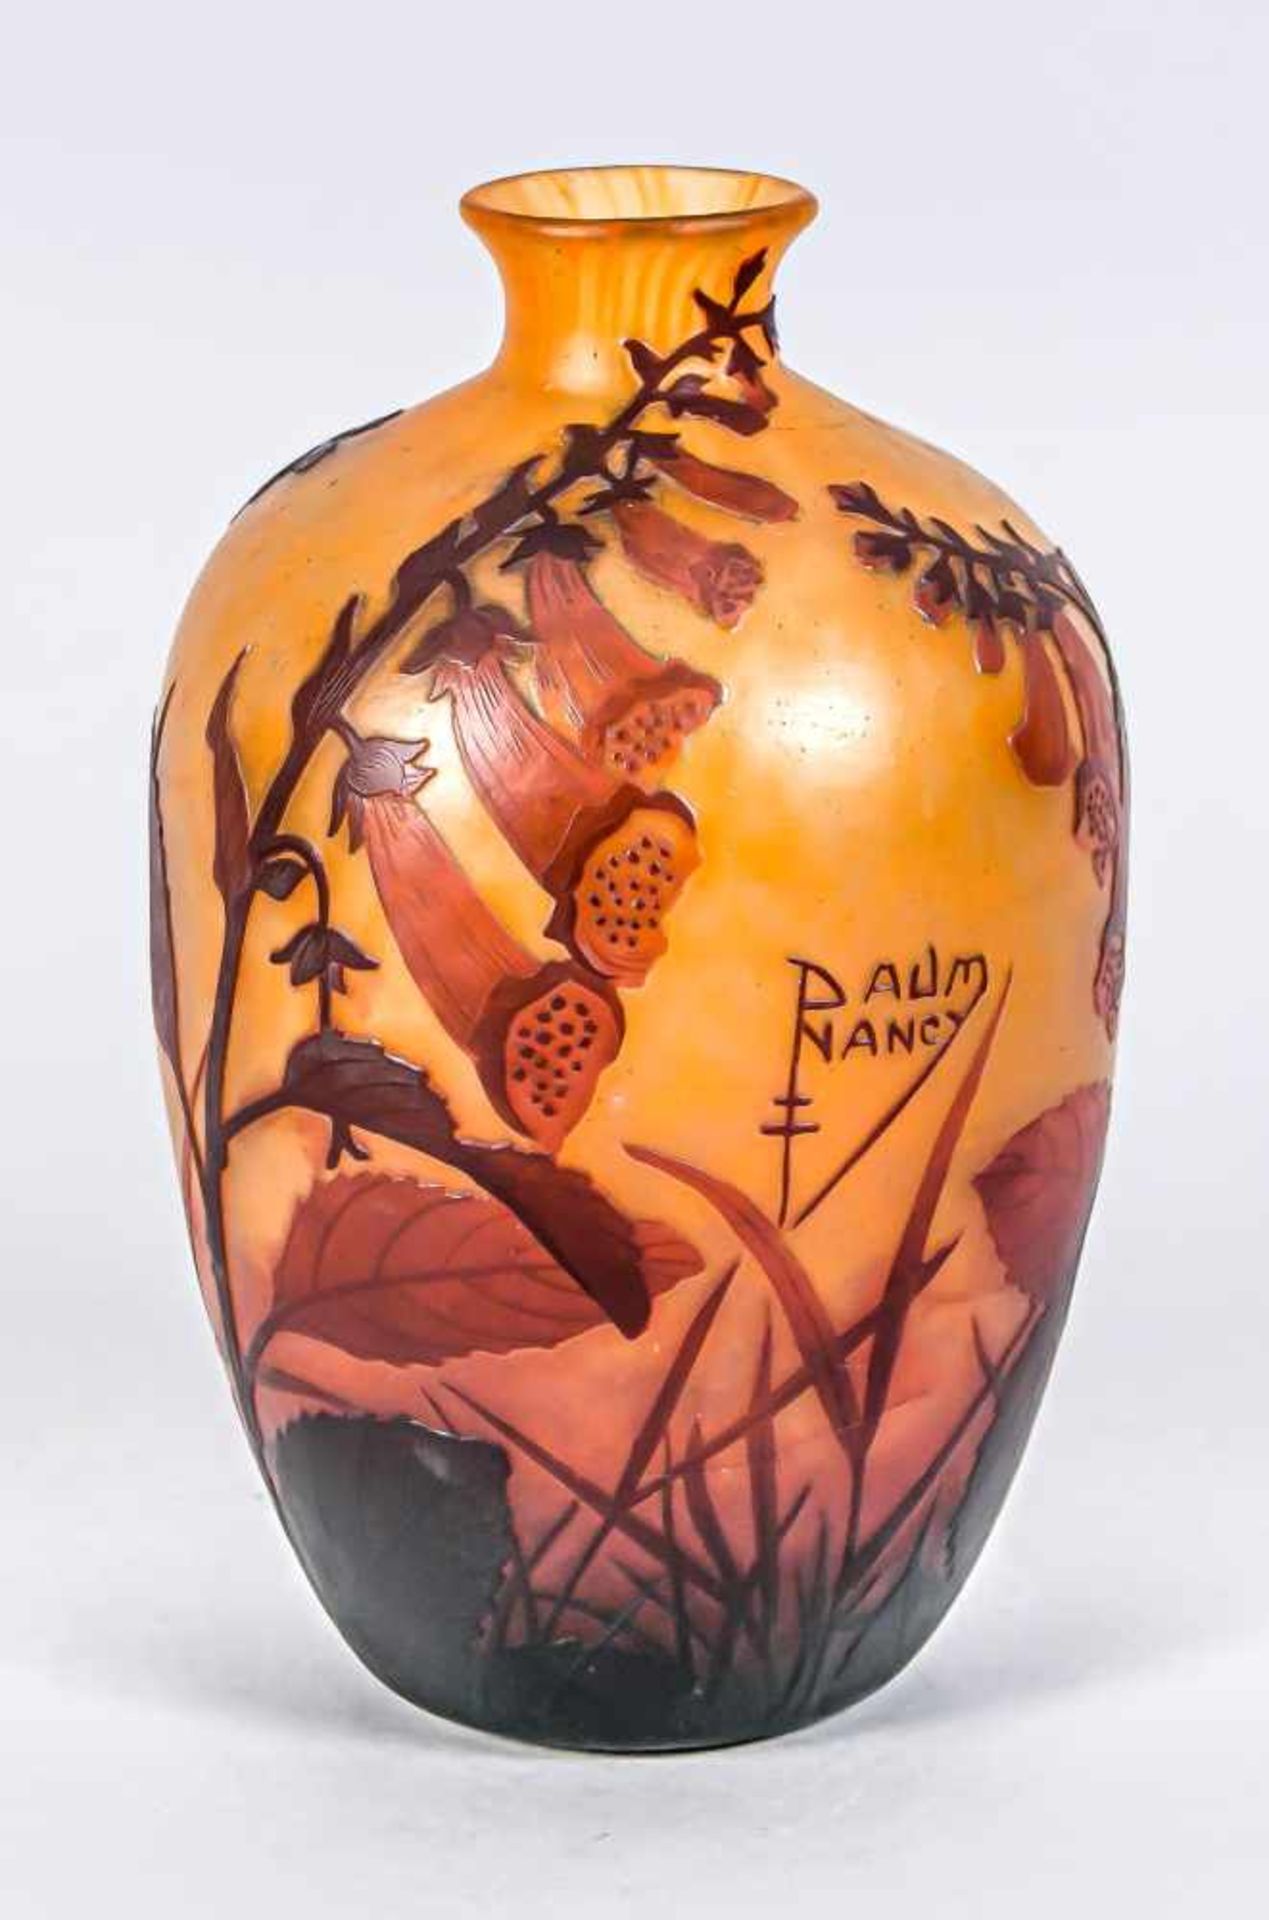 Vase, 20. Jh., in der Art von Daum Nancy, runder Stand, ovoider Korpus, schlanker Hals mit